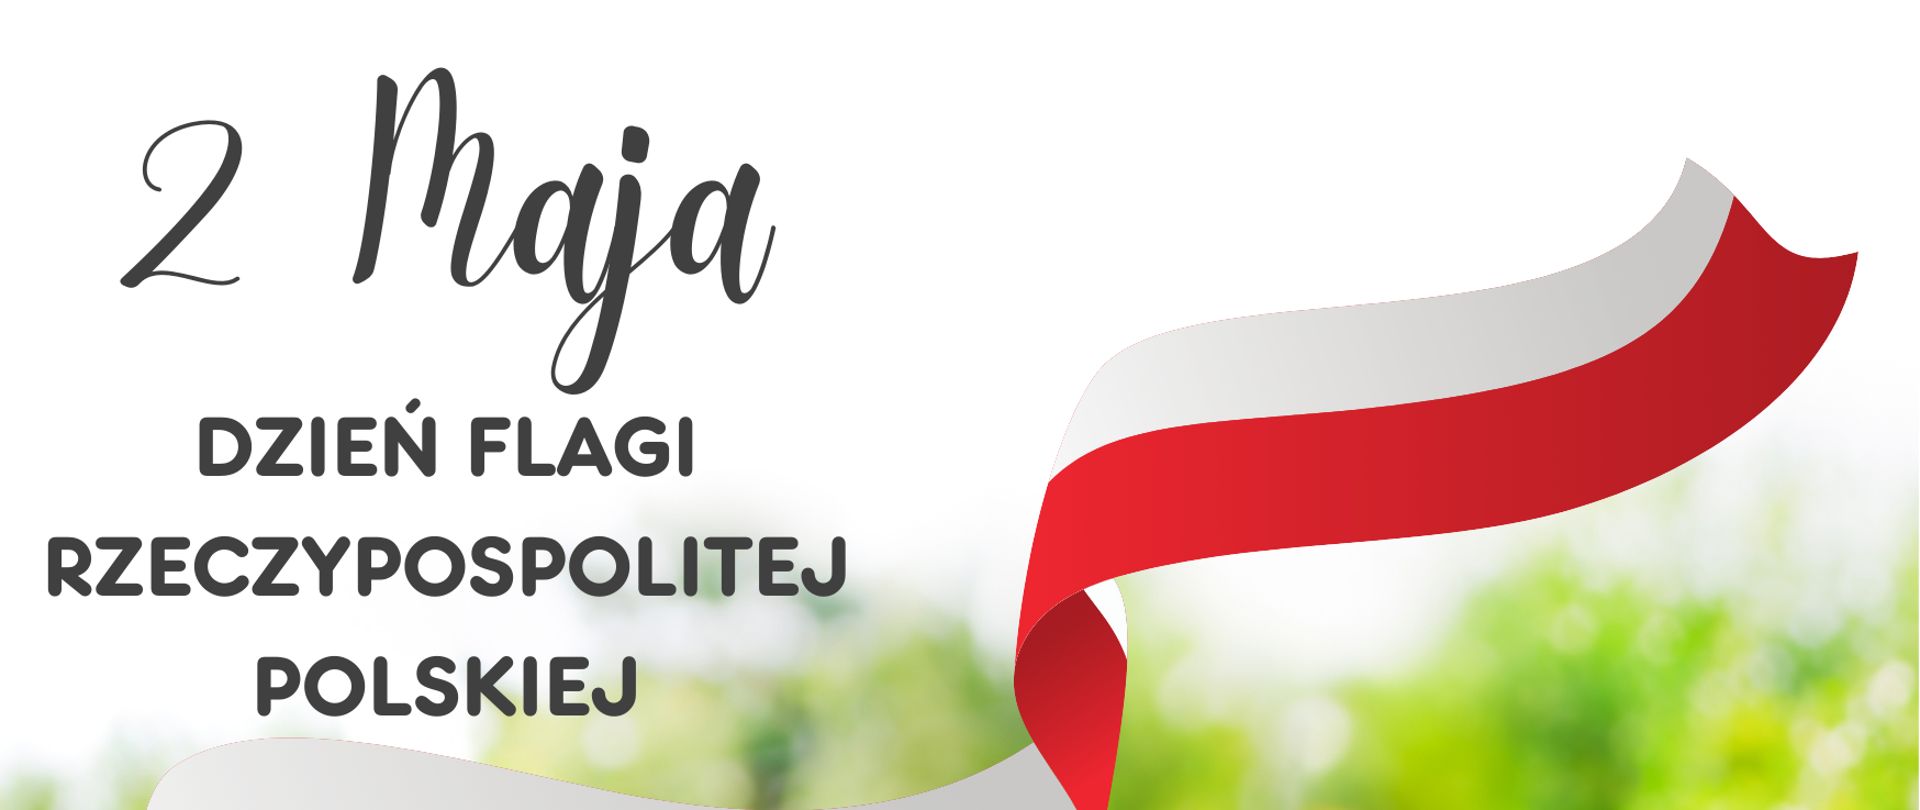 Plakat - 2 Maja - Dzień Flagi Rzeczypospolitej Polskiej